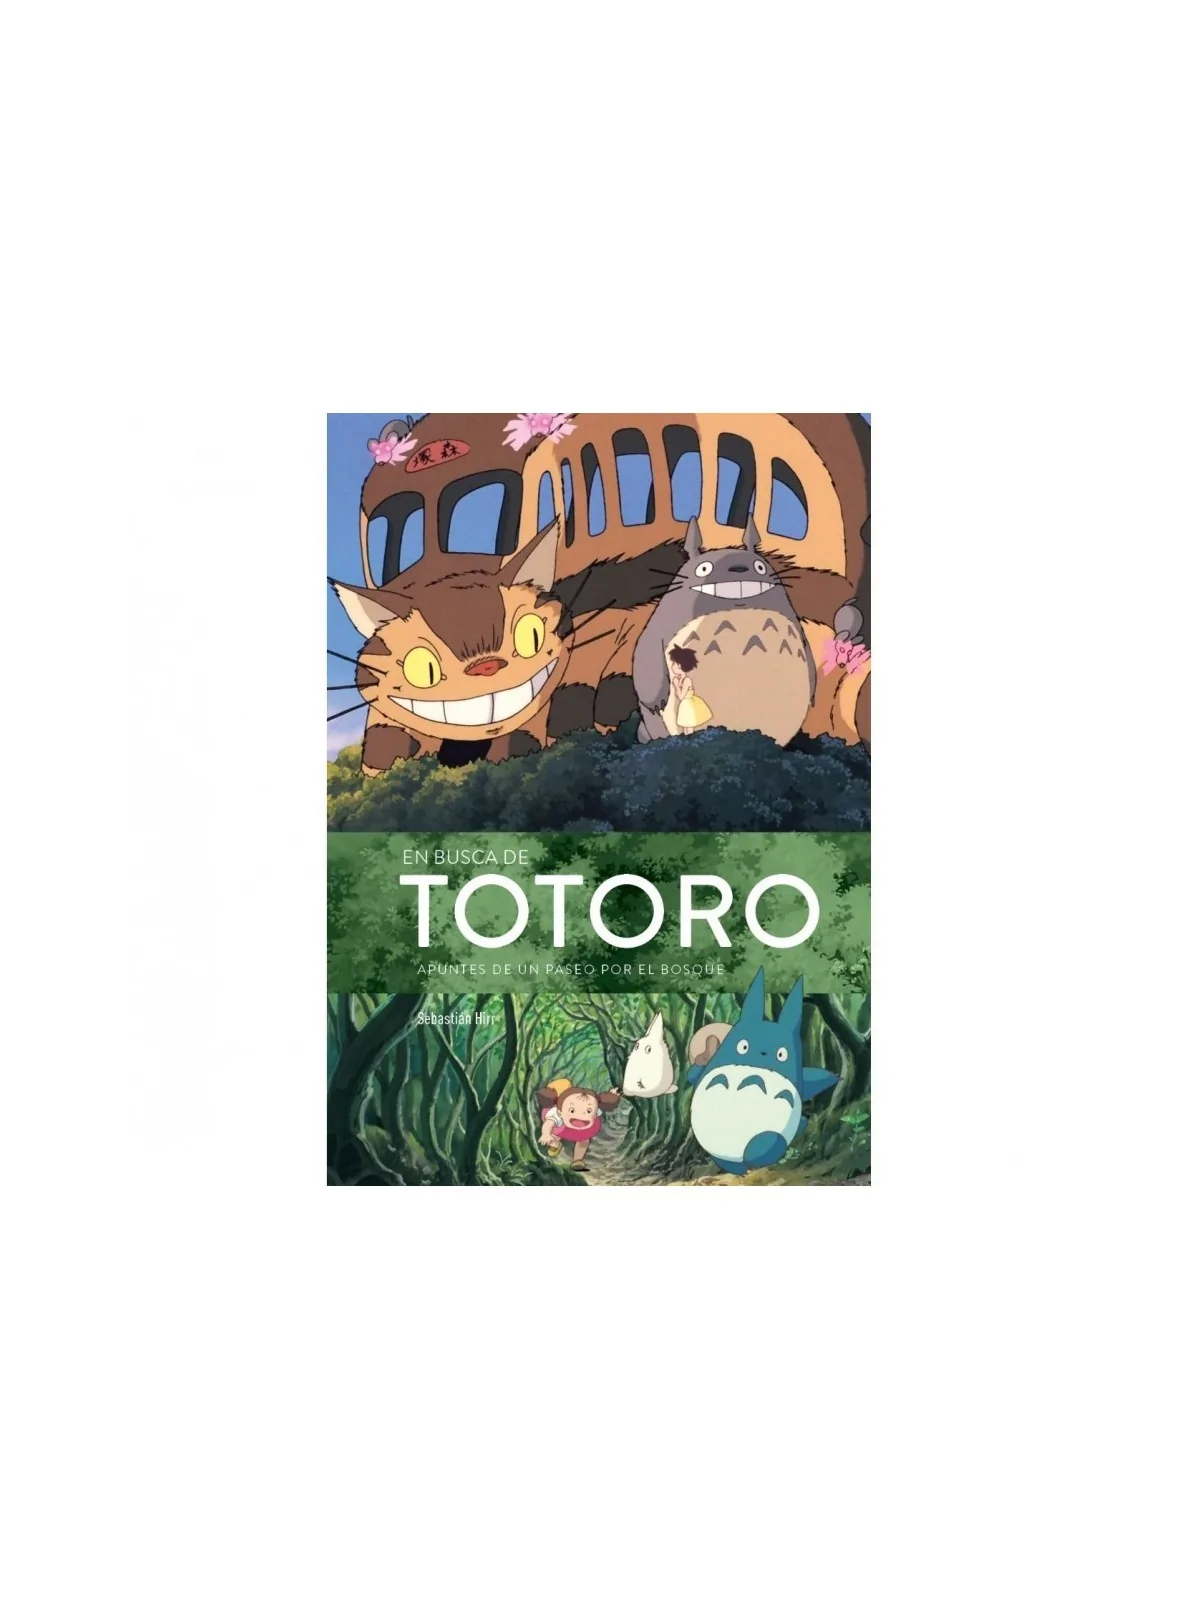 Comprar En Busca de Totoro: Apuntes de un Paseo por el Bosque barato a